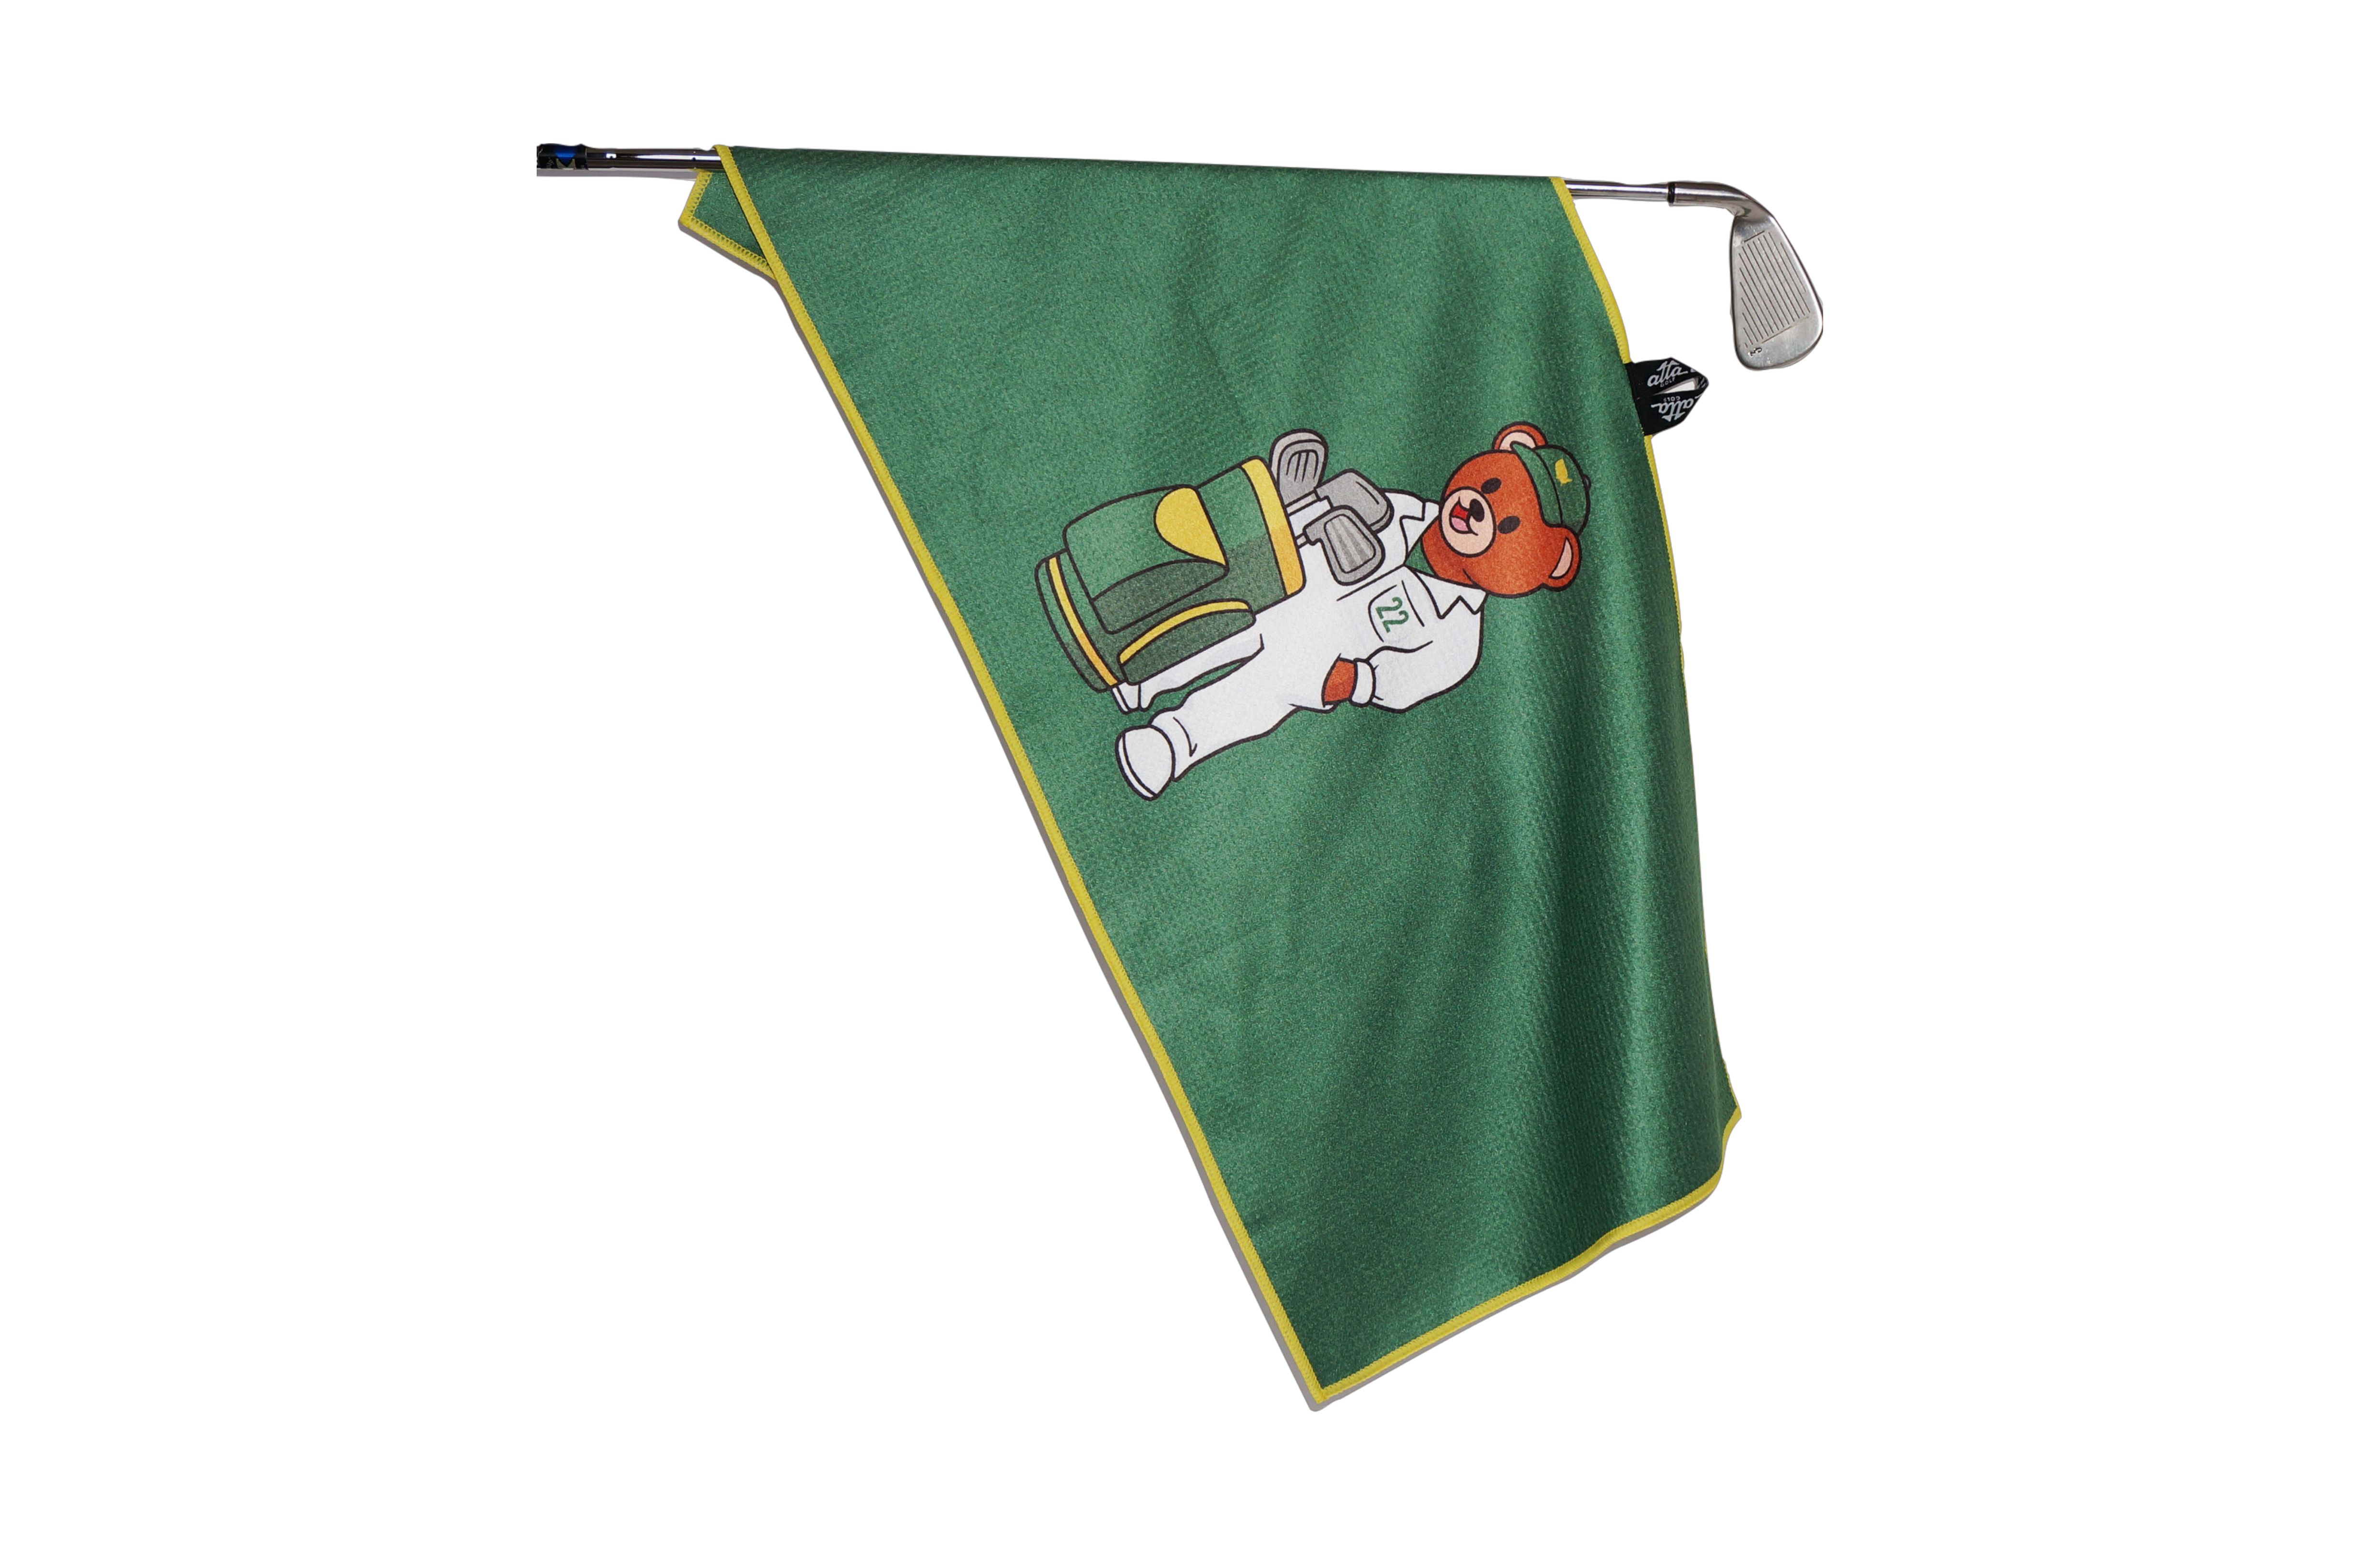 Tiger Head Golf Towel - Matchstick Golf